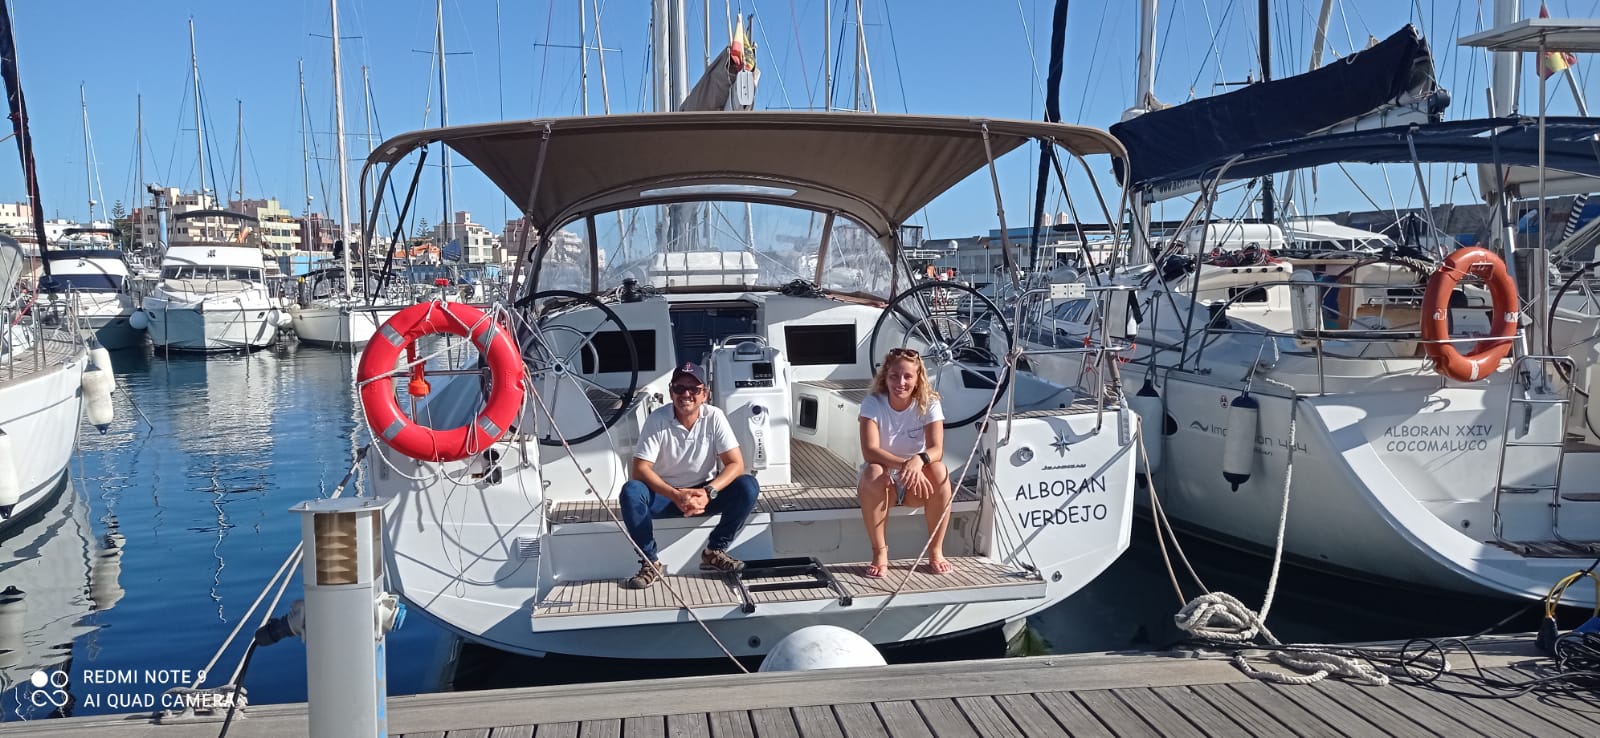 Sun Odyssey 410 - Yacht Charter Las Galletas & Boat hire in Spain Canary Islands Tenerife Las Galletas Marina del Sur 3